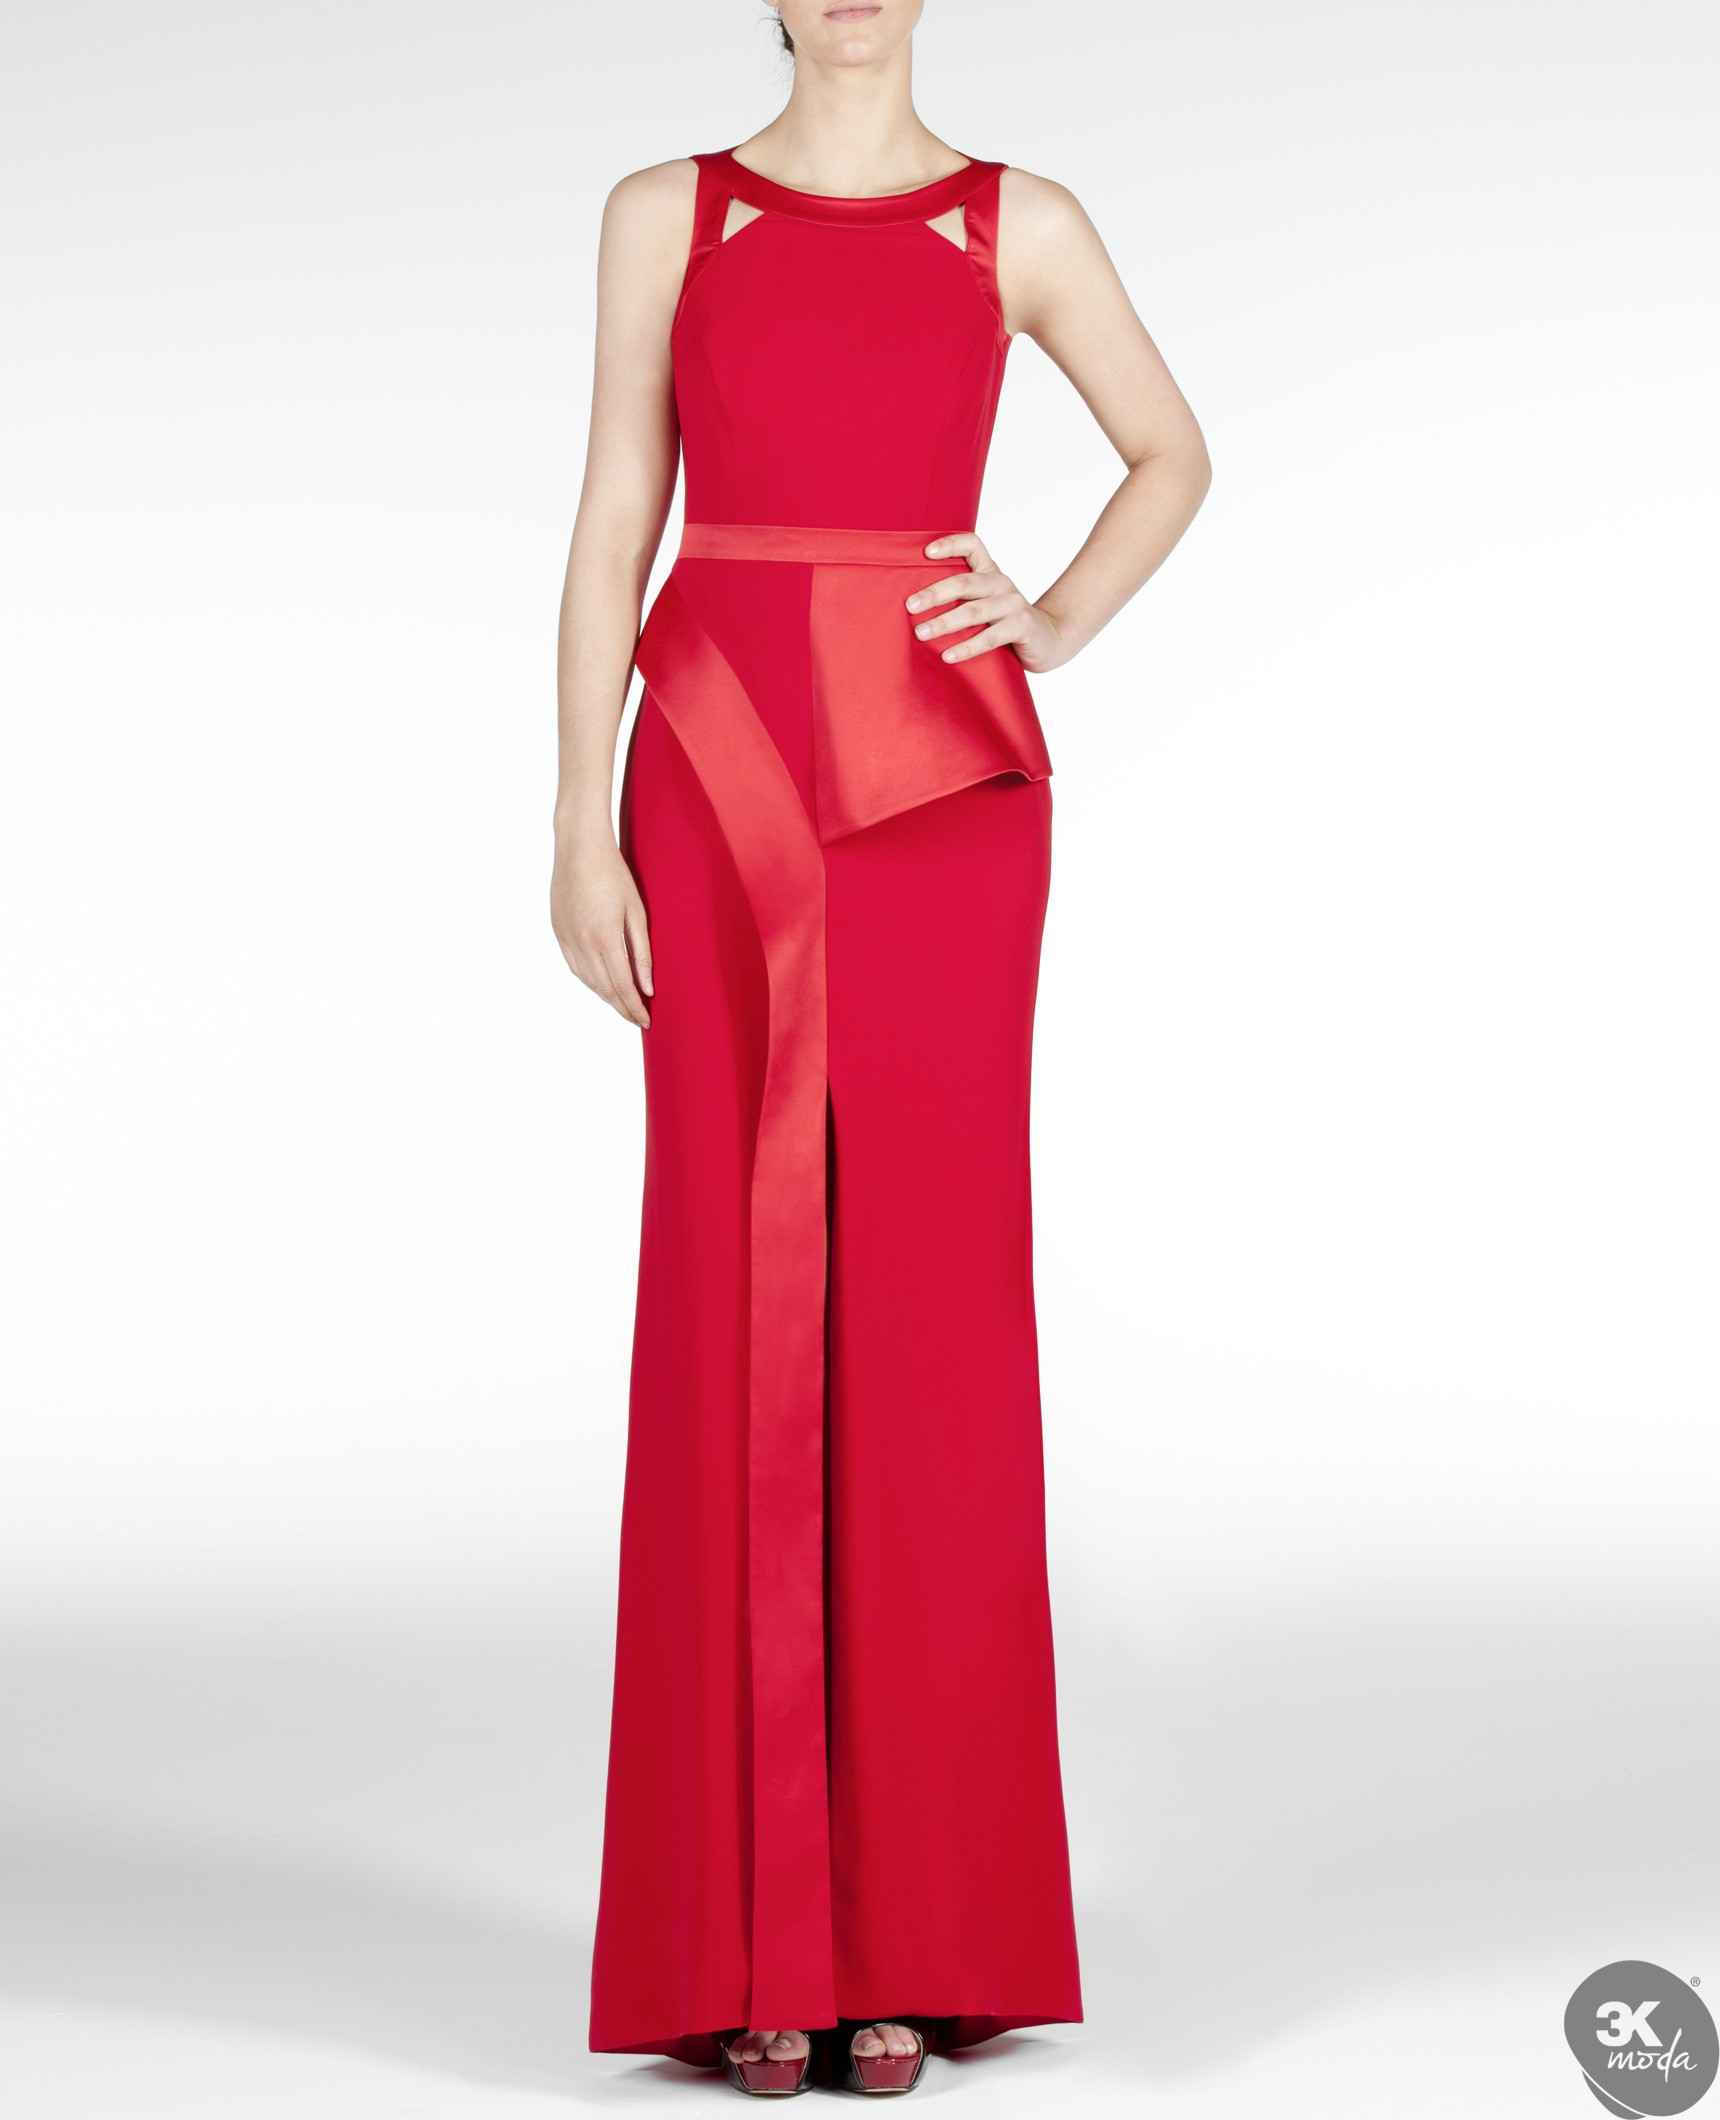 Adil Isik Abiye Elbise Modelleri 2021 3k Moda